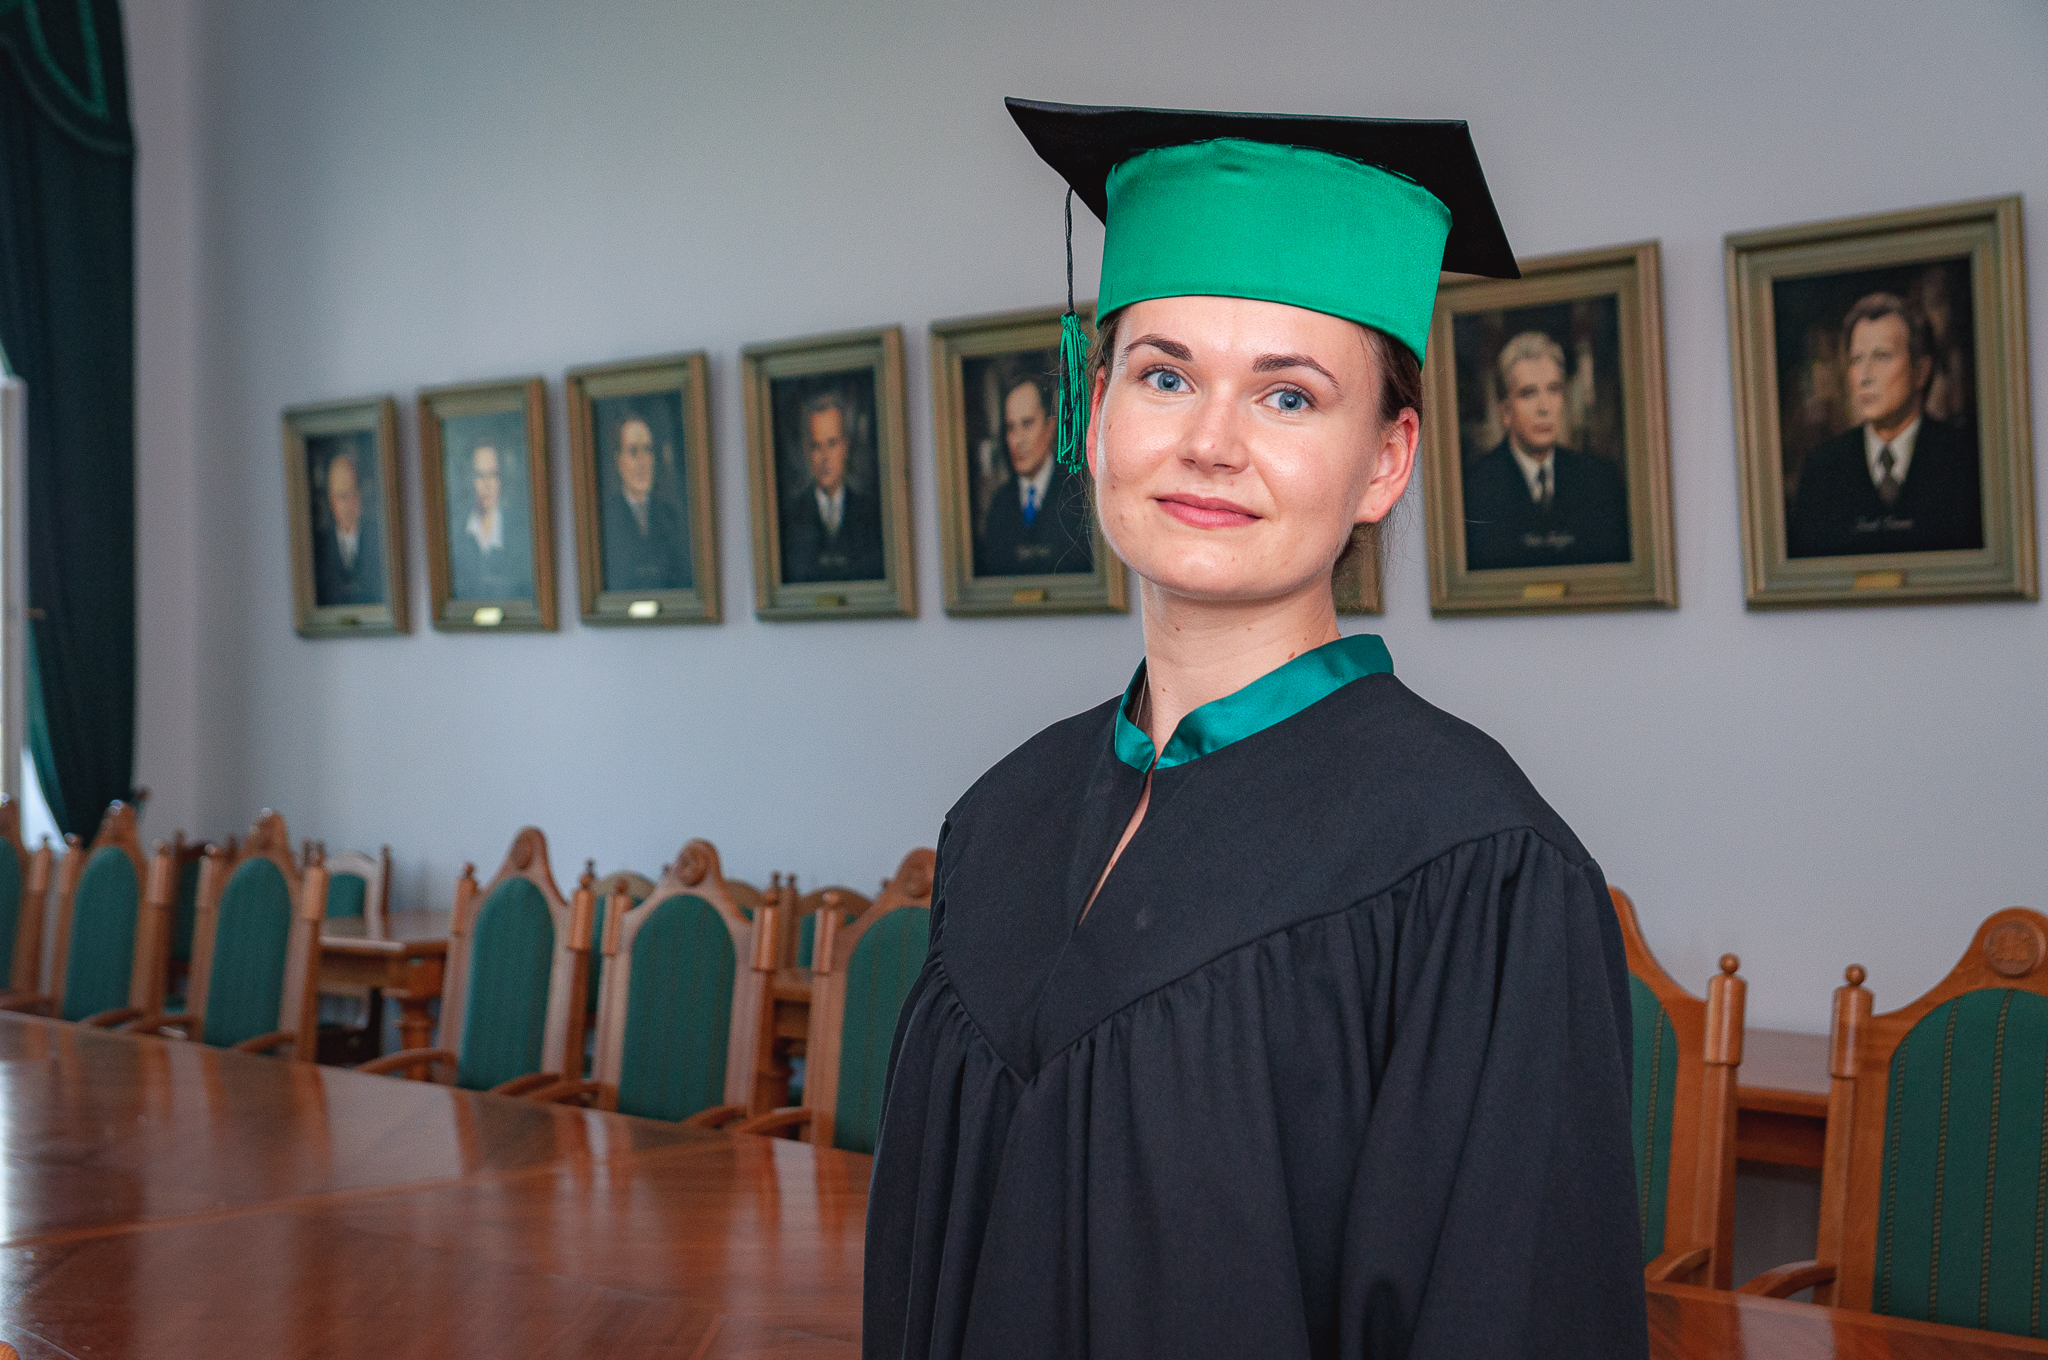 LLU absolvente Elīza Ilze Malceniece: "Augstākā izglītība lauksaimniecībā sniedz skatījumu uz nozari kopumā"